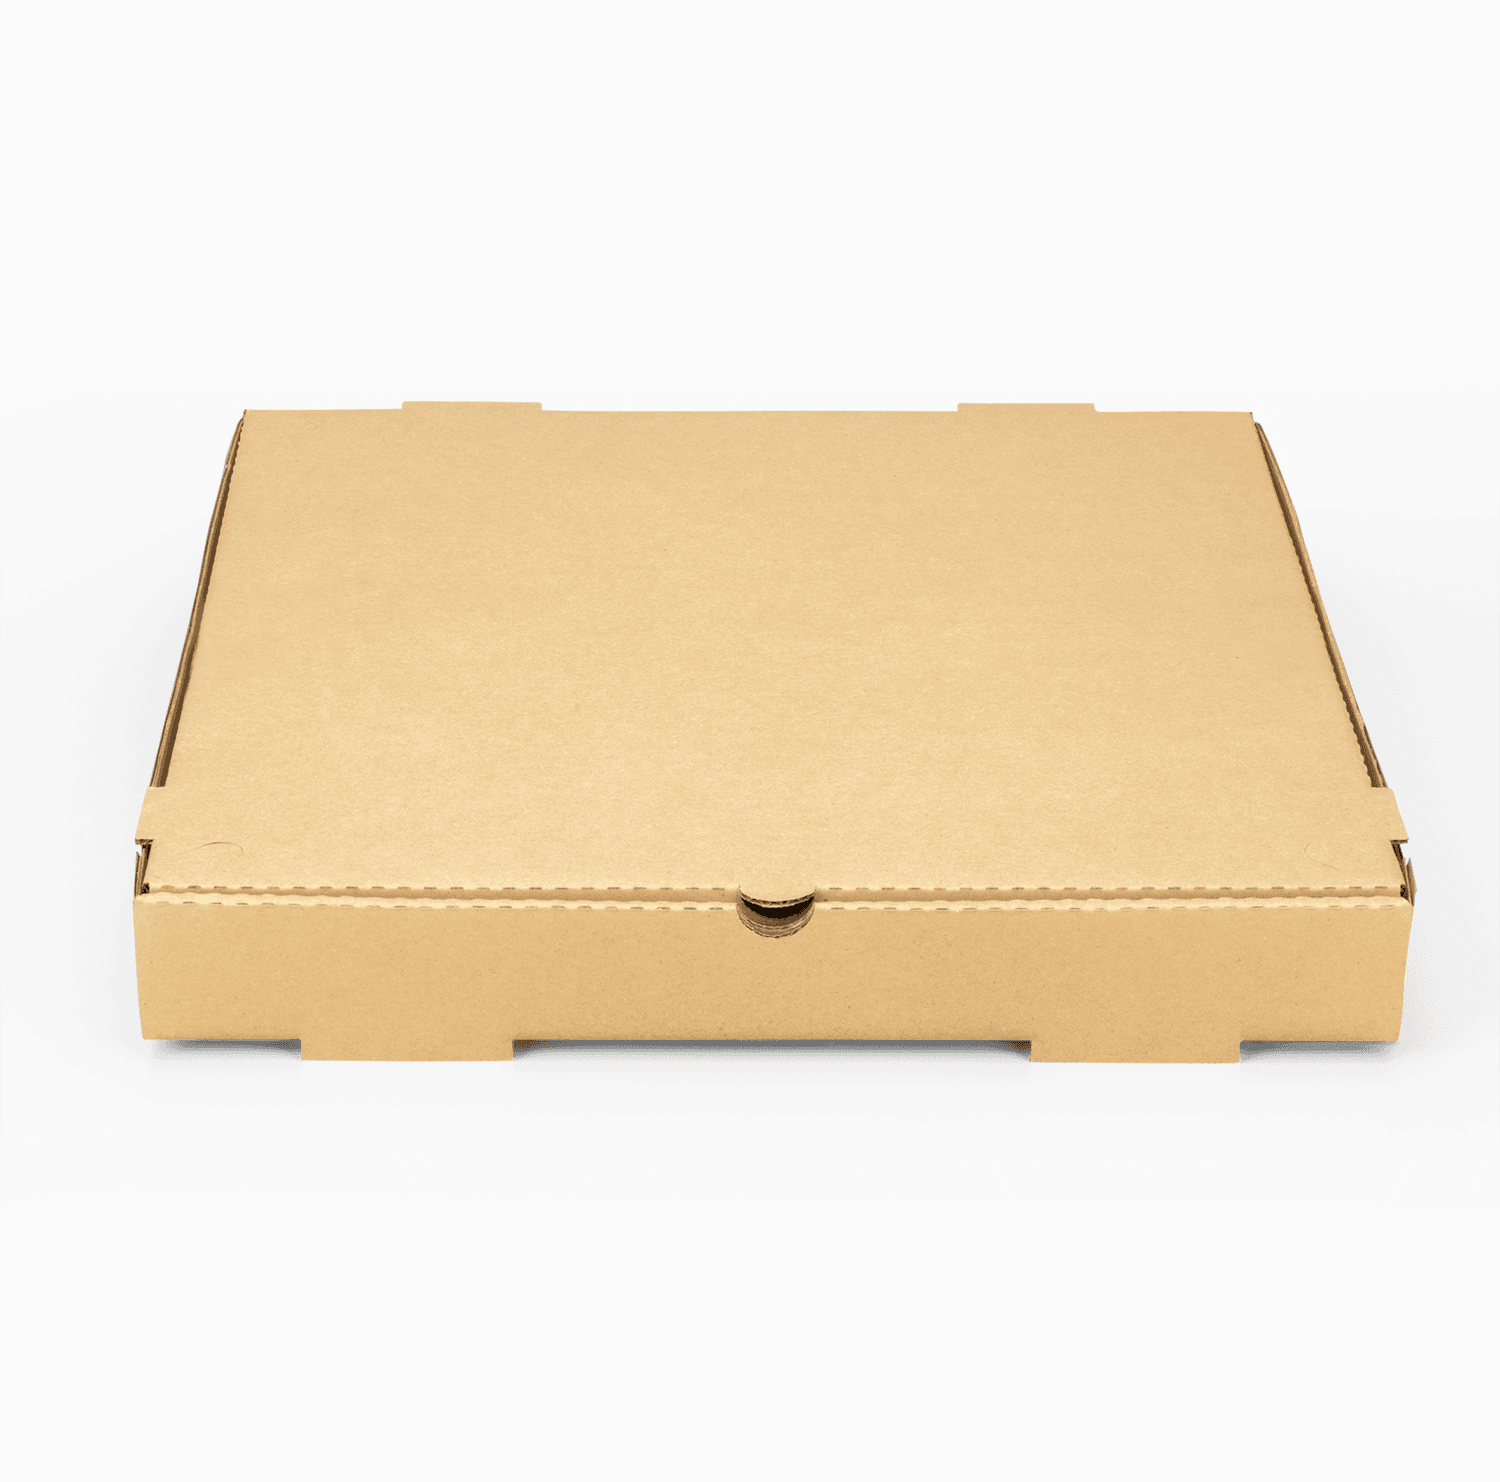 Karat Corrugated Pizza Box, 16''x16''x2'', Kraft - 50 pcs